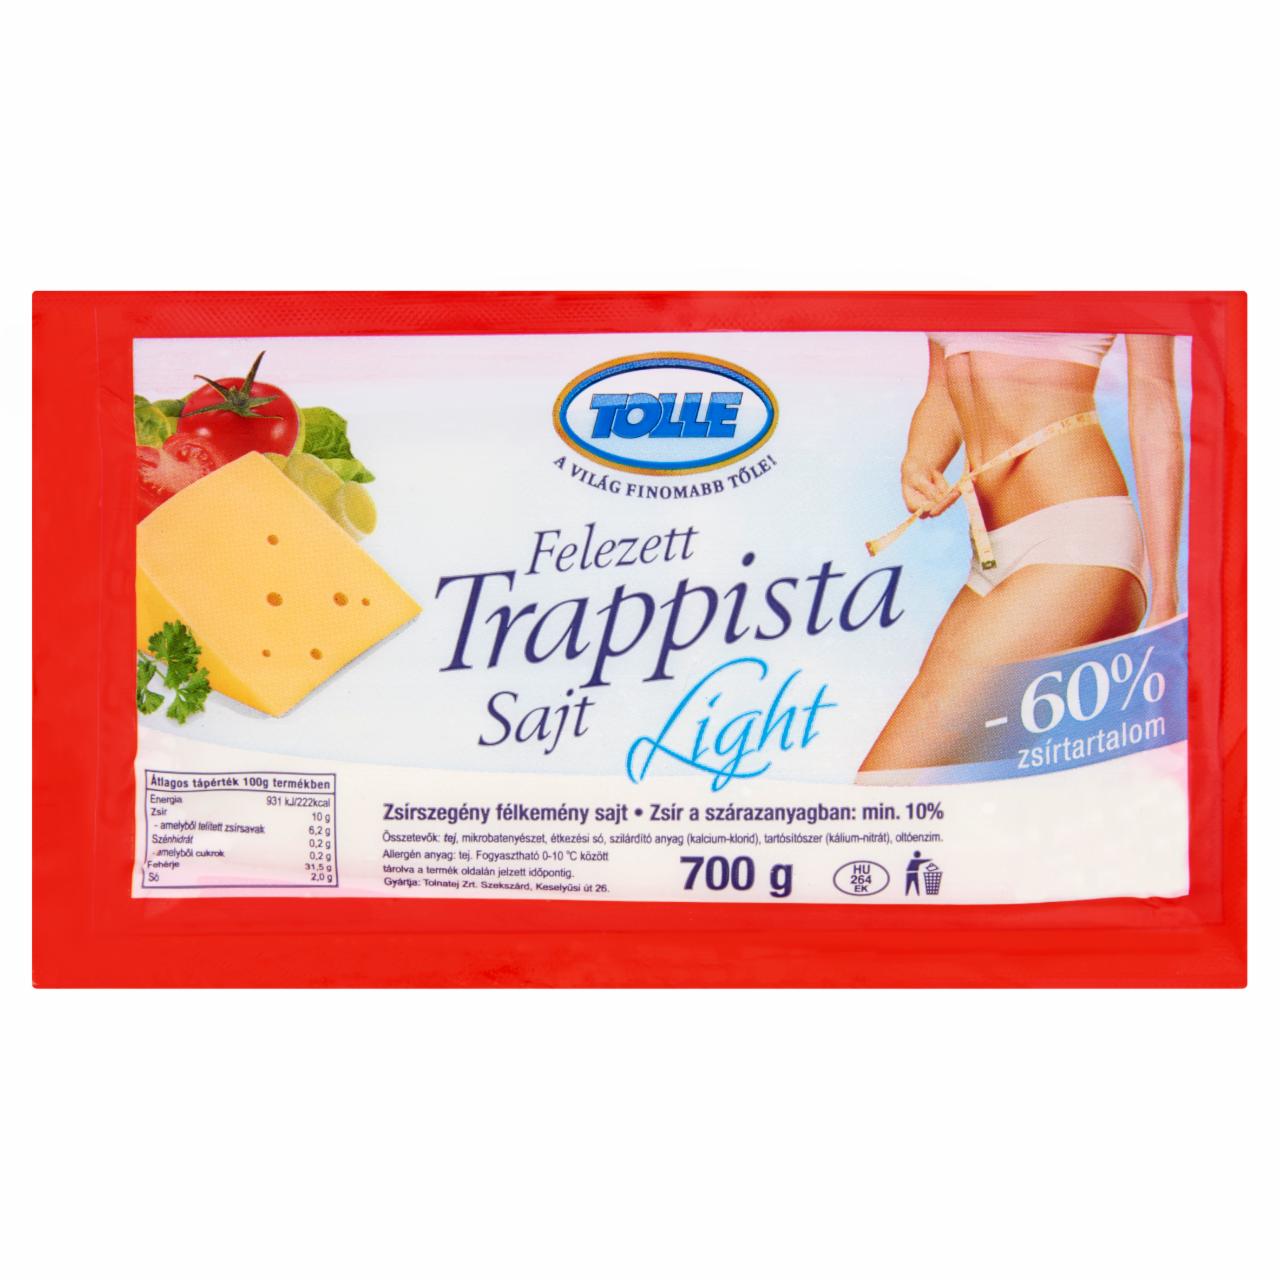 Képek - Light zsírszegény félkemény felezett trappista sajt Tolle